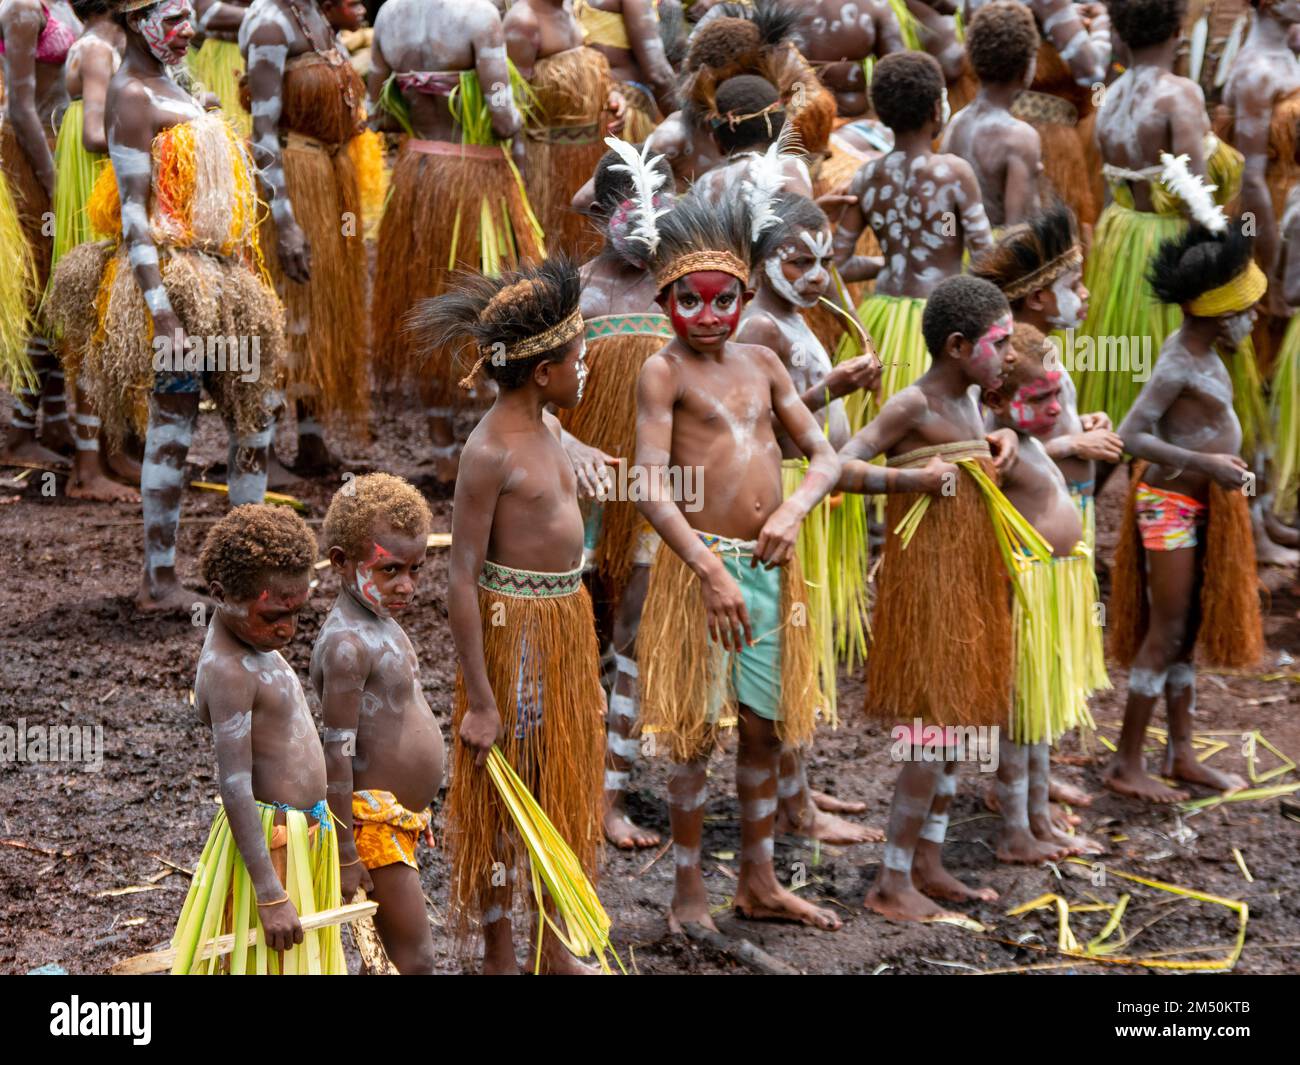 Bienvenue en canoë au Village PEM dans la région d'Asmat, en Papouasie-du-Sud, en Indonésie Banque D'Images